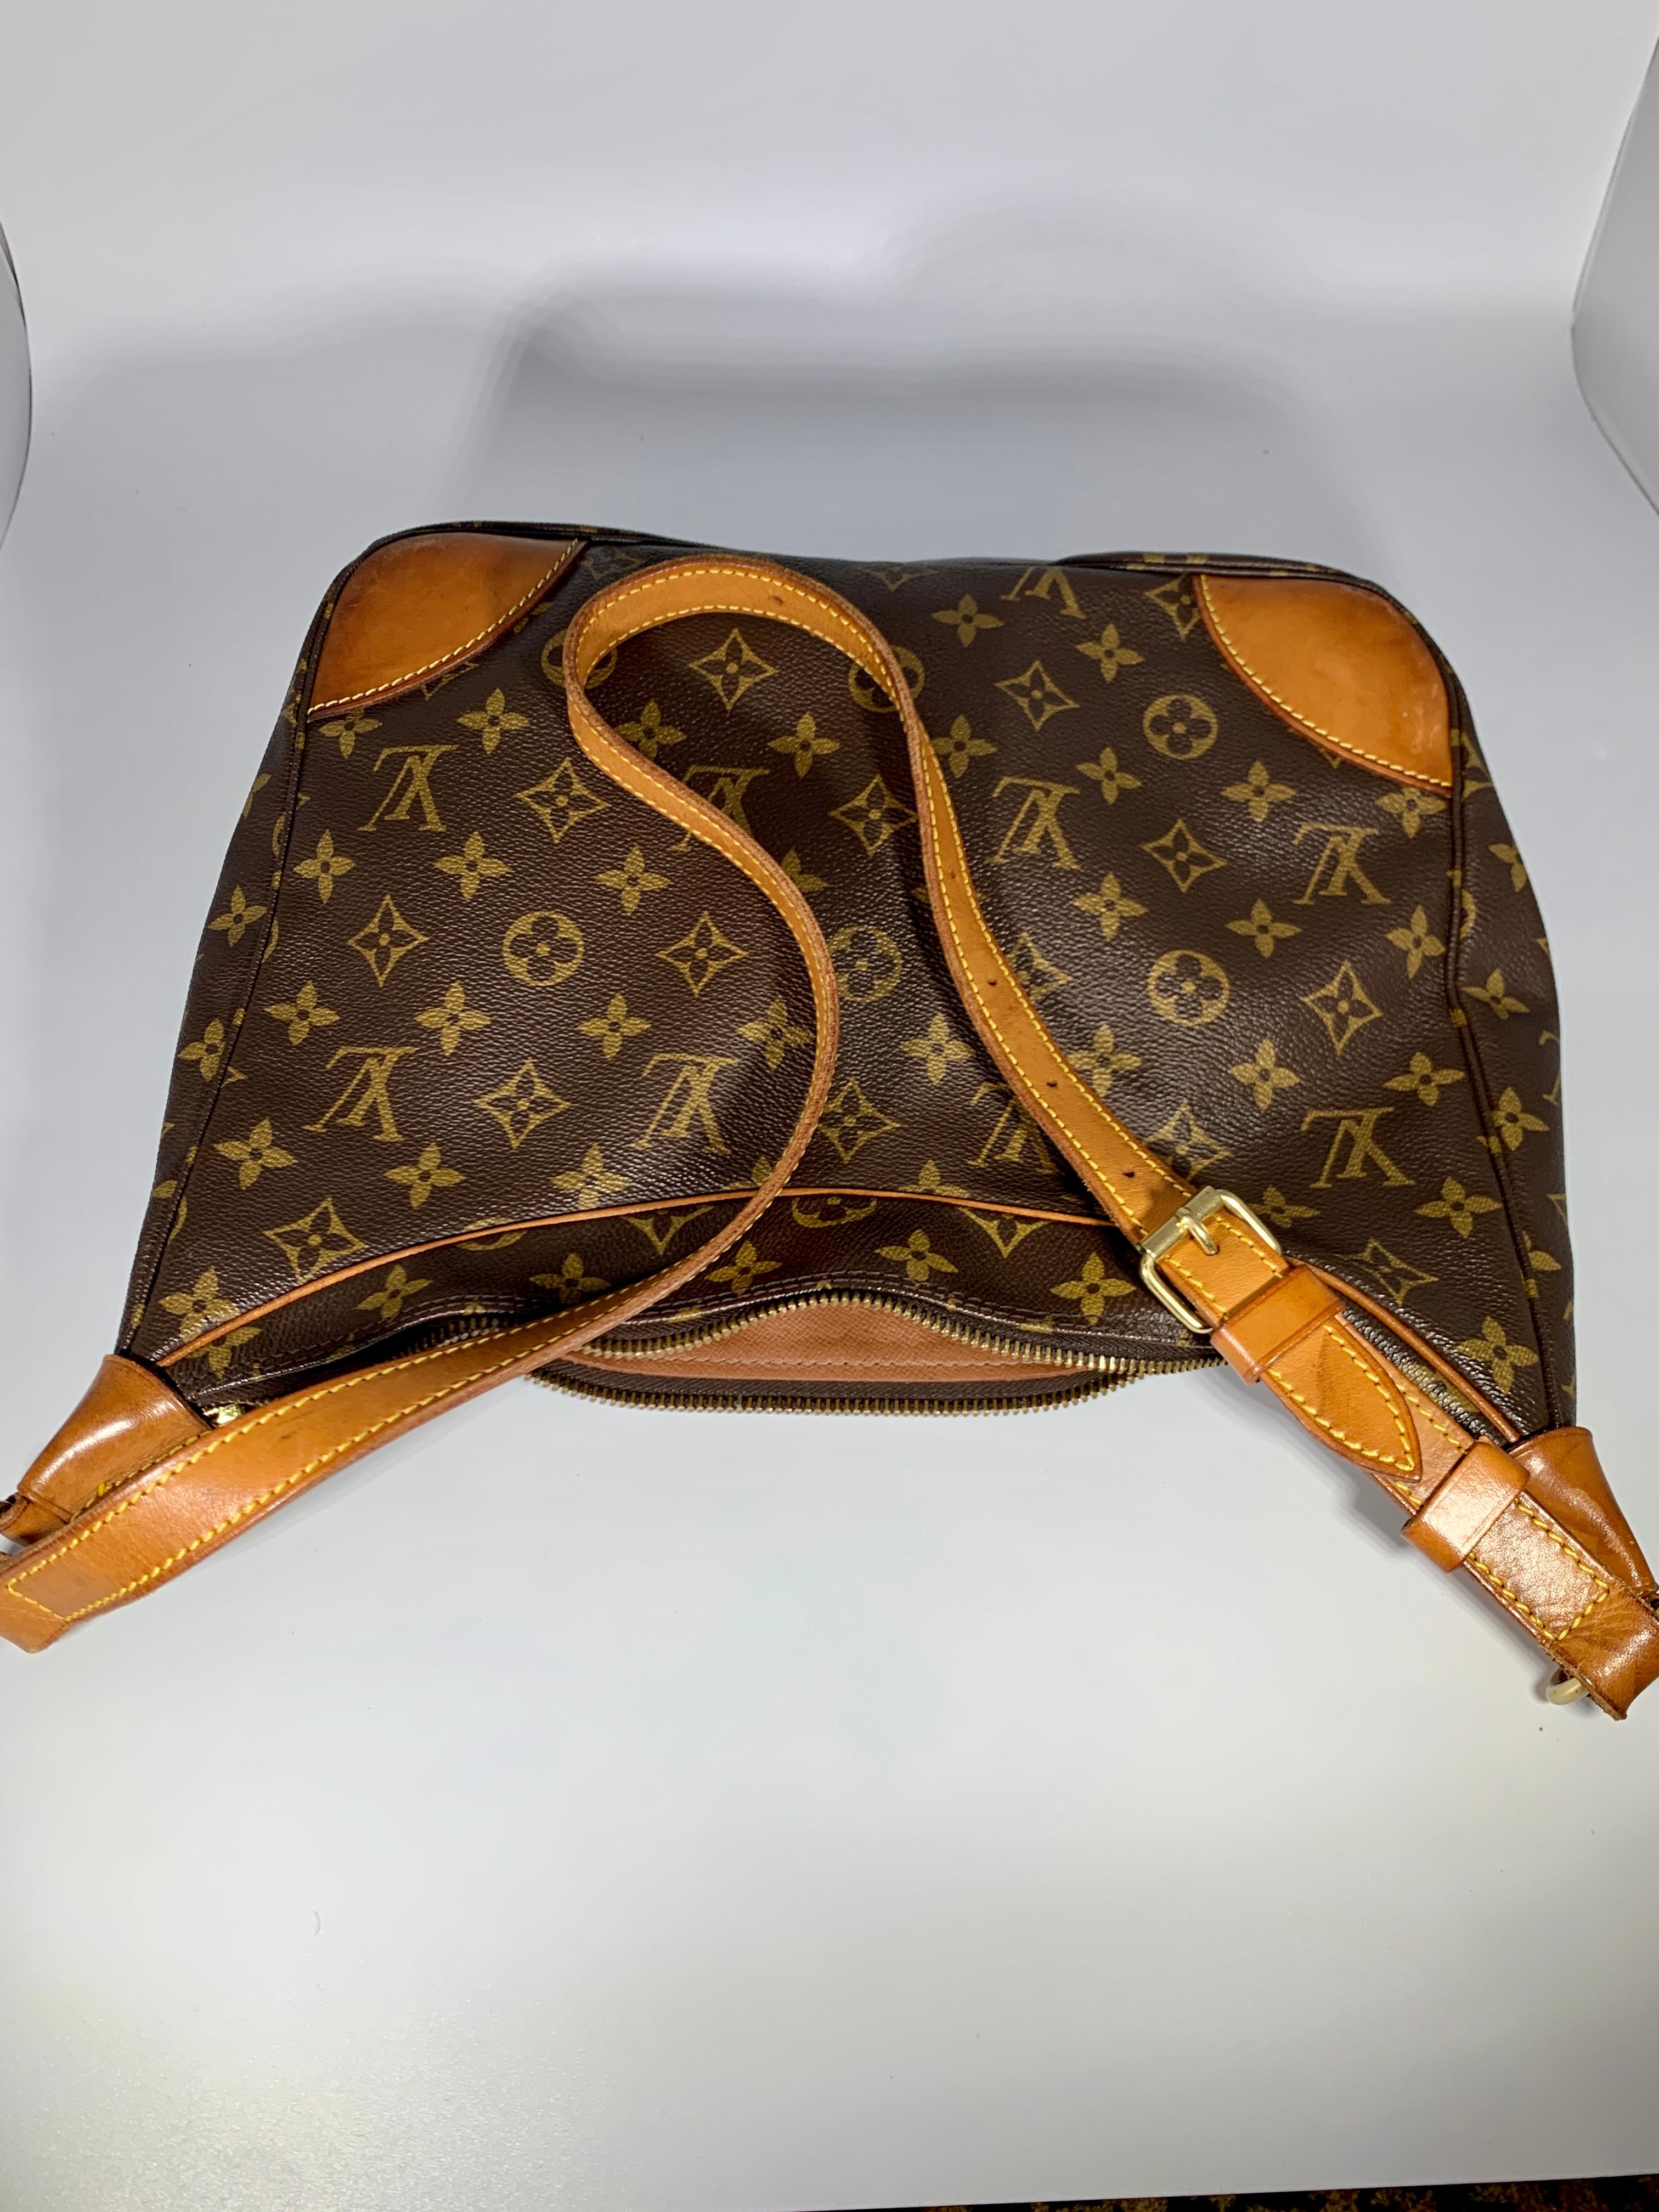 LOUIS VUITTON Monogram BOULOGNE 30 Shoulder Bag Satchel Handbag Purse Vintage  7